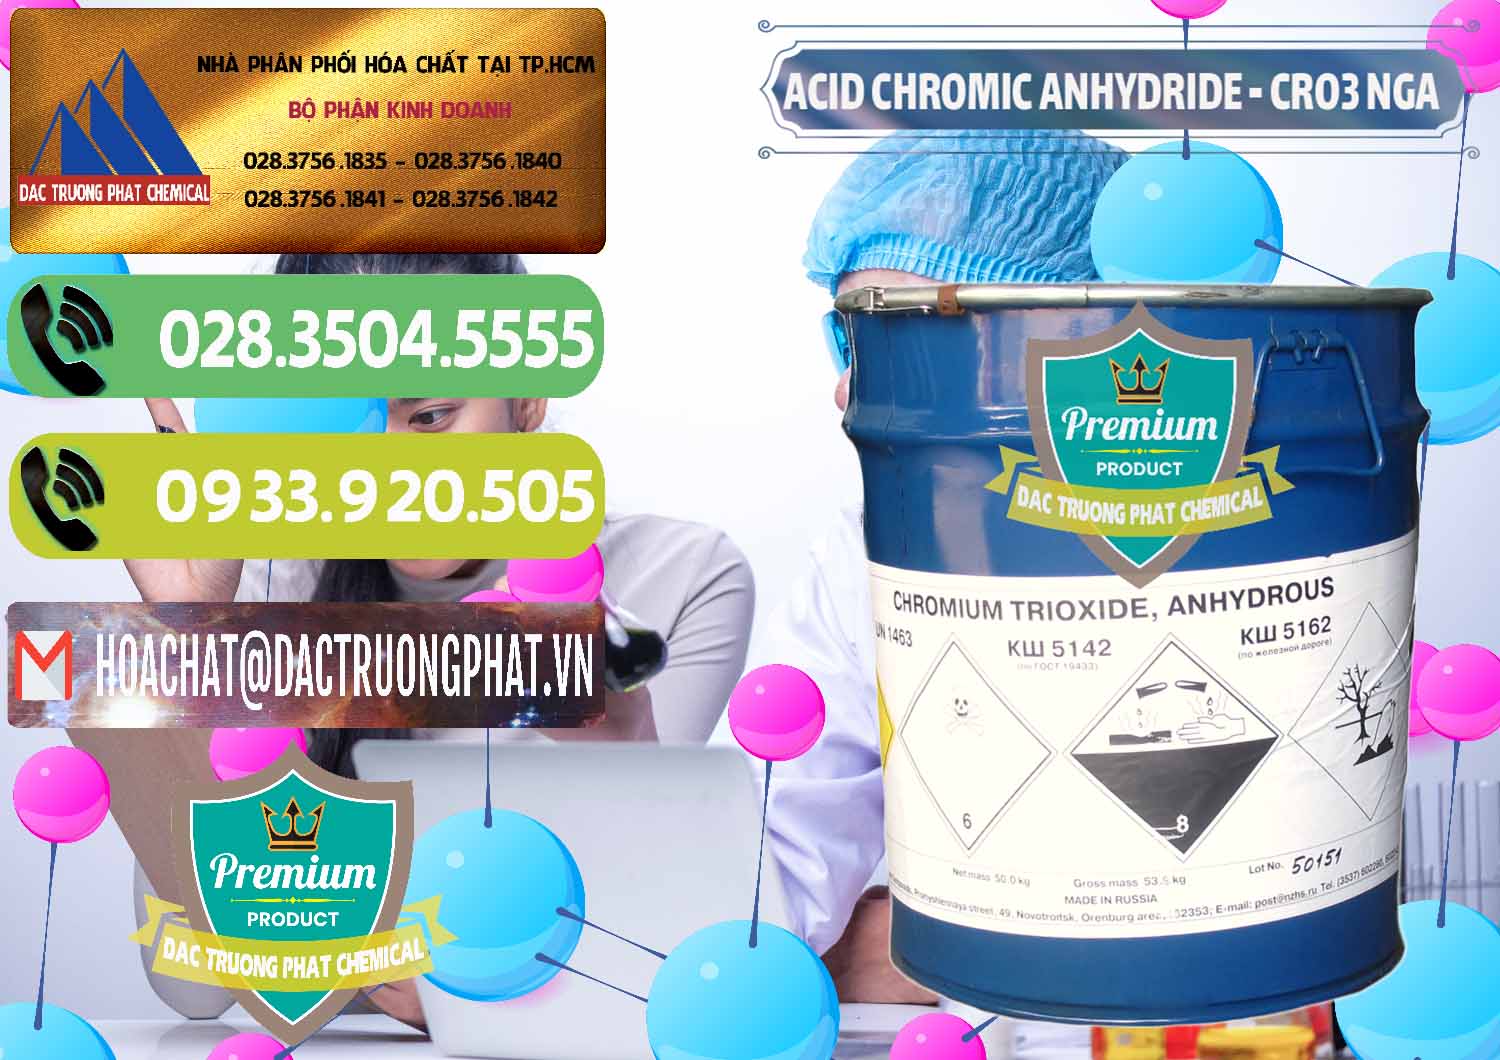 Đơn vị chuyên bán - cung cấp Acid Chromic Anhydride - Cromic CRO3 Nga Russia - 0006 - Công ty nhập khẩu & phân phối hóa chất tại TP.HCM - hoachatmientay.vn